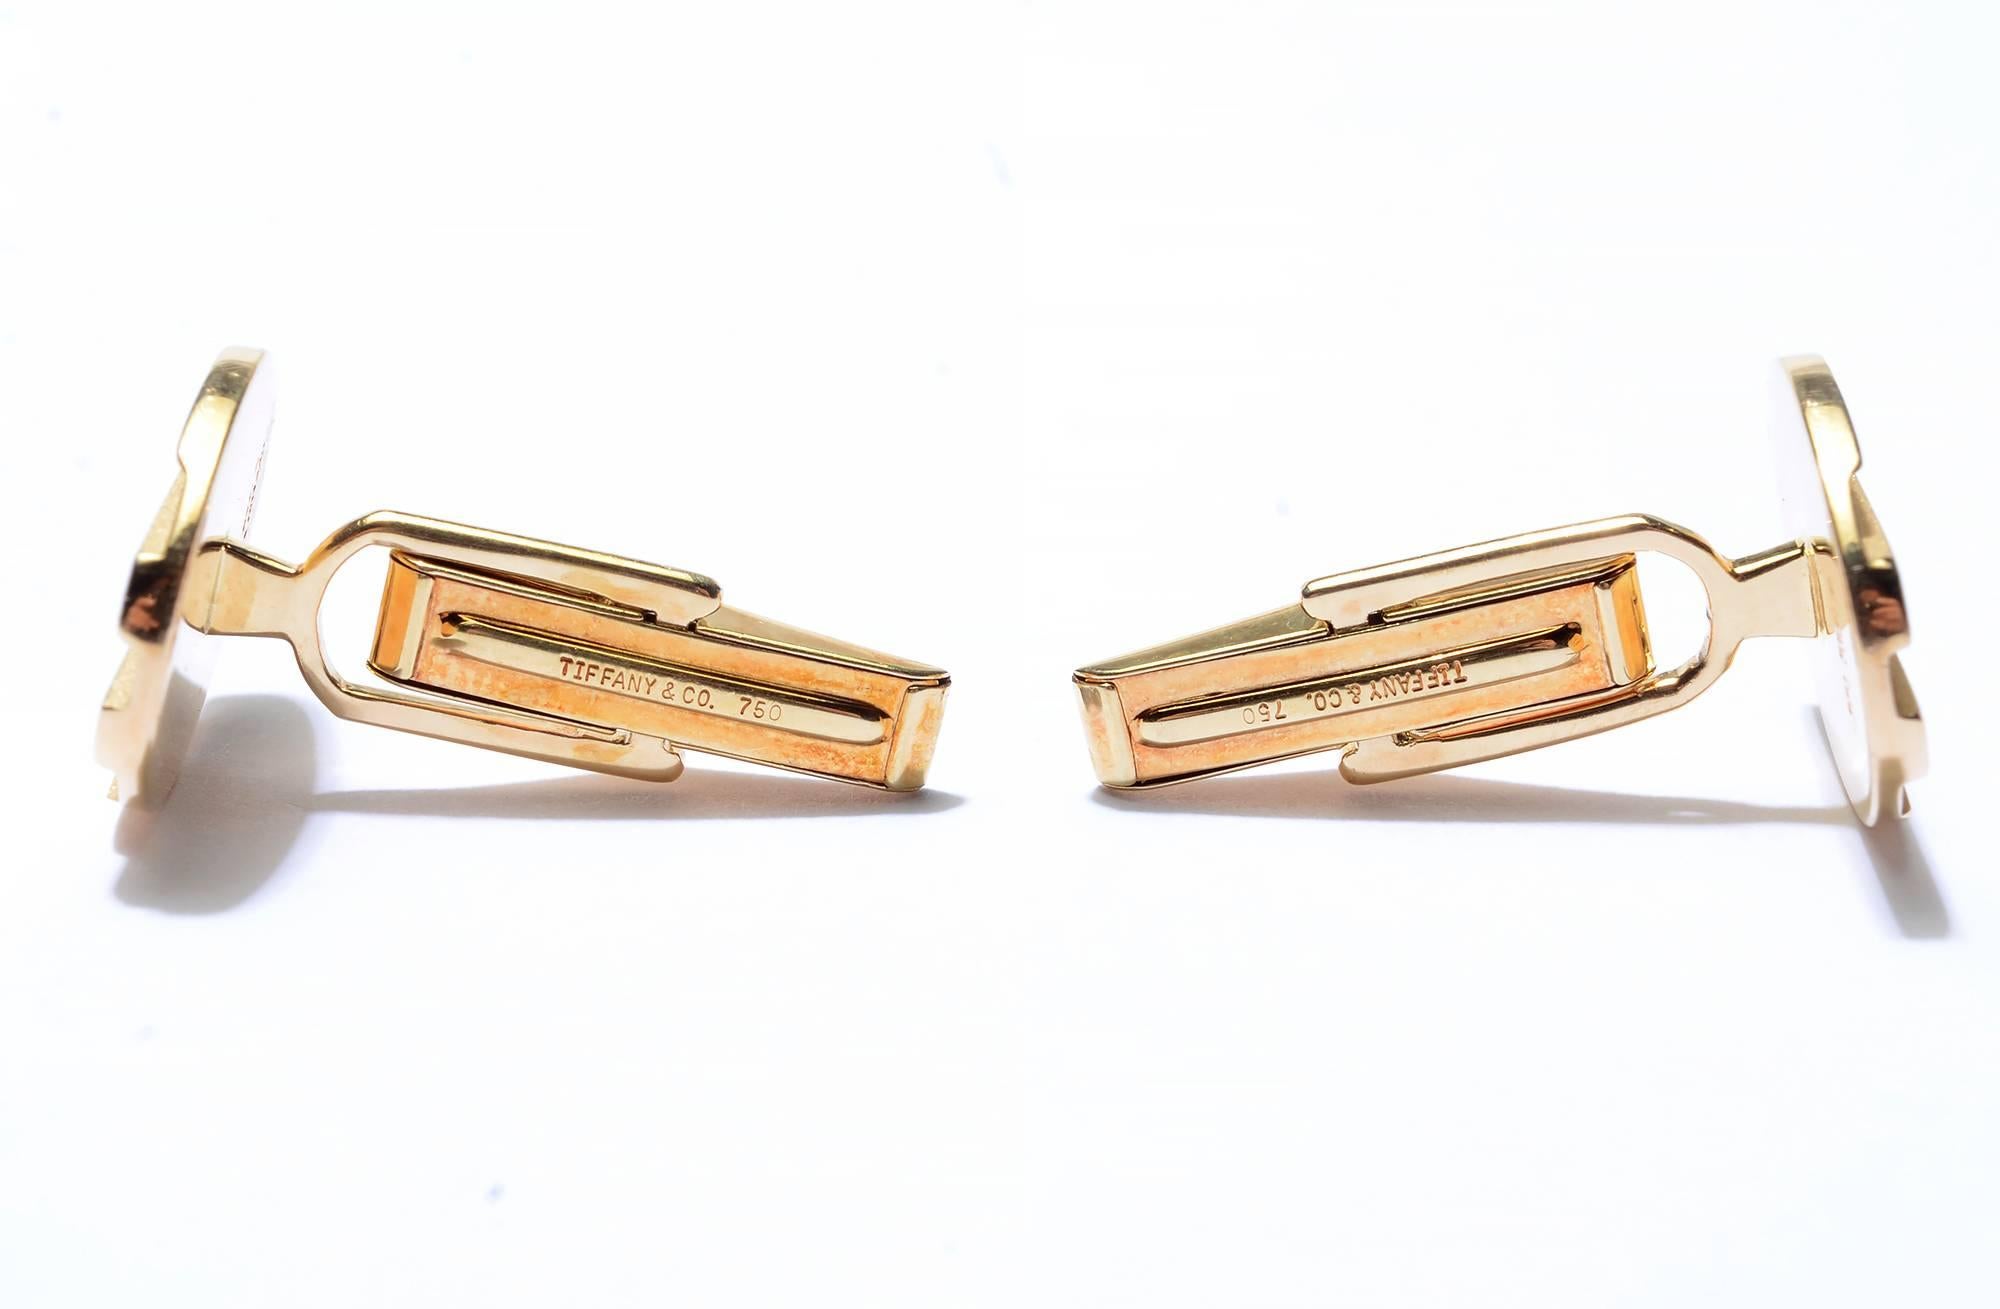 Boutons de manchette en or 18 carats de Tiffany & Co. Ils ont deux finitions différentes. Les barres en relief ont une finition brillante et les zones inférieures ont une surface finement granulée. Les mesures sont de 3/4